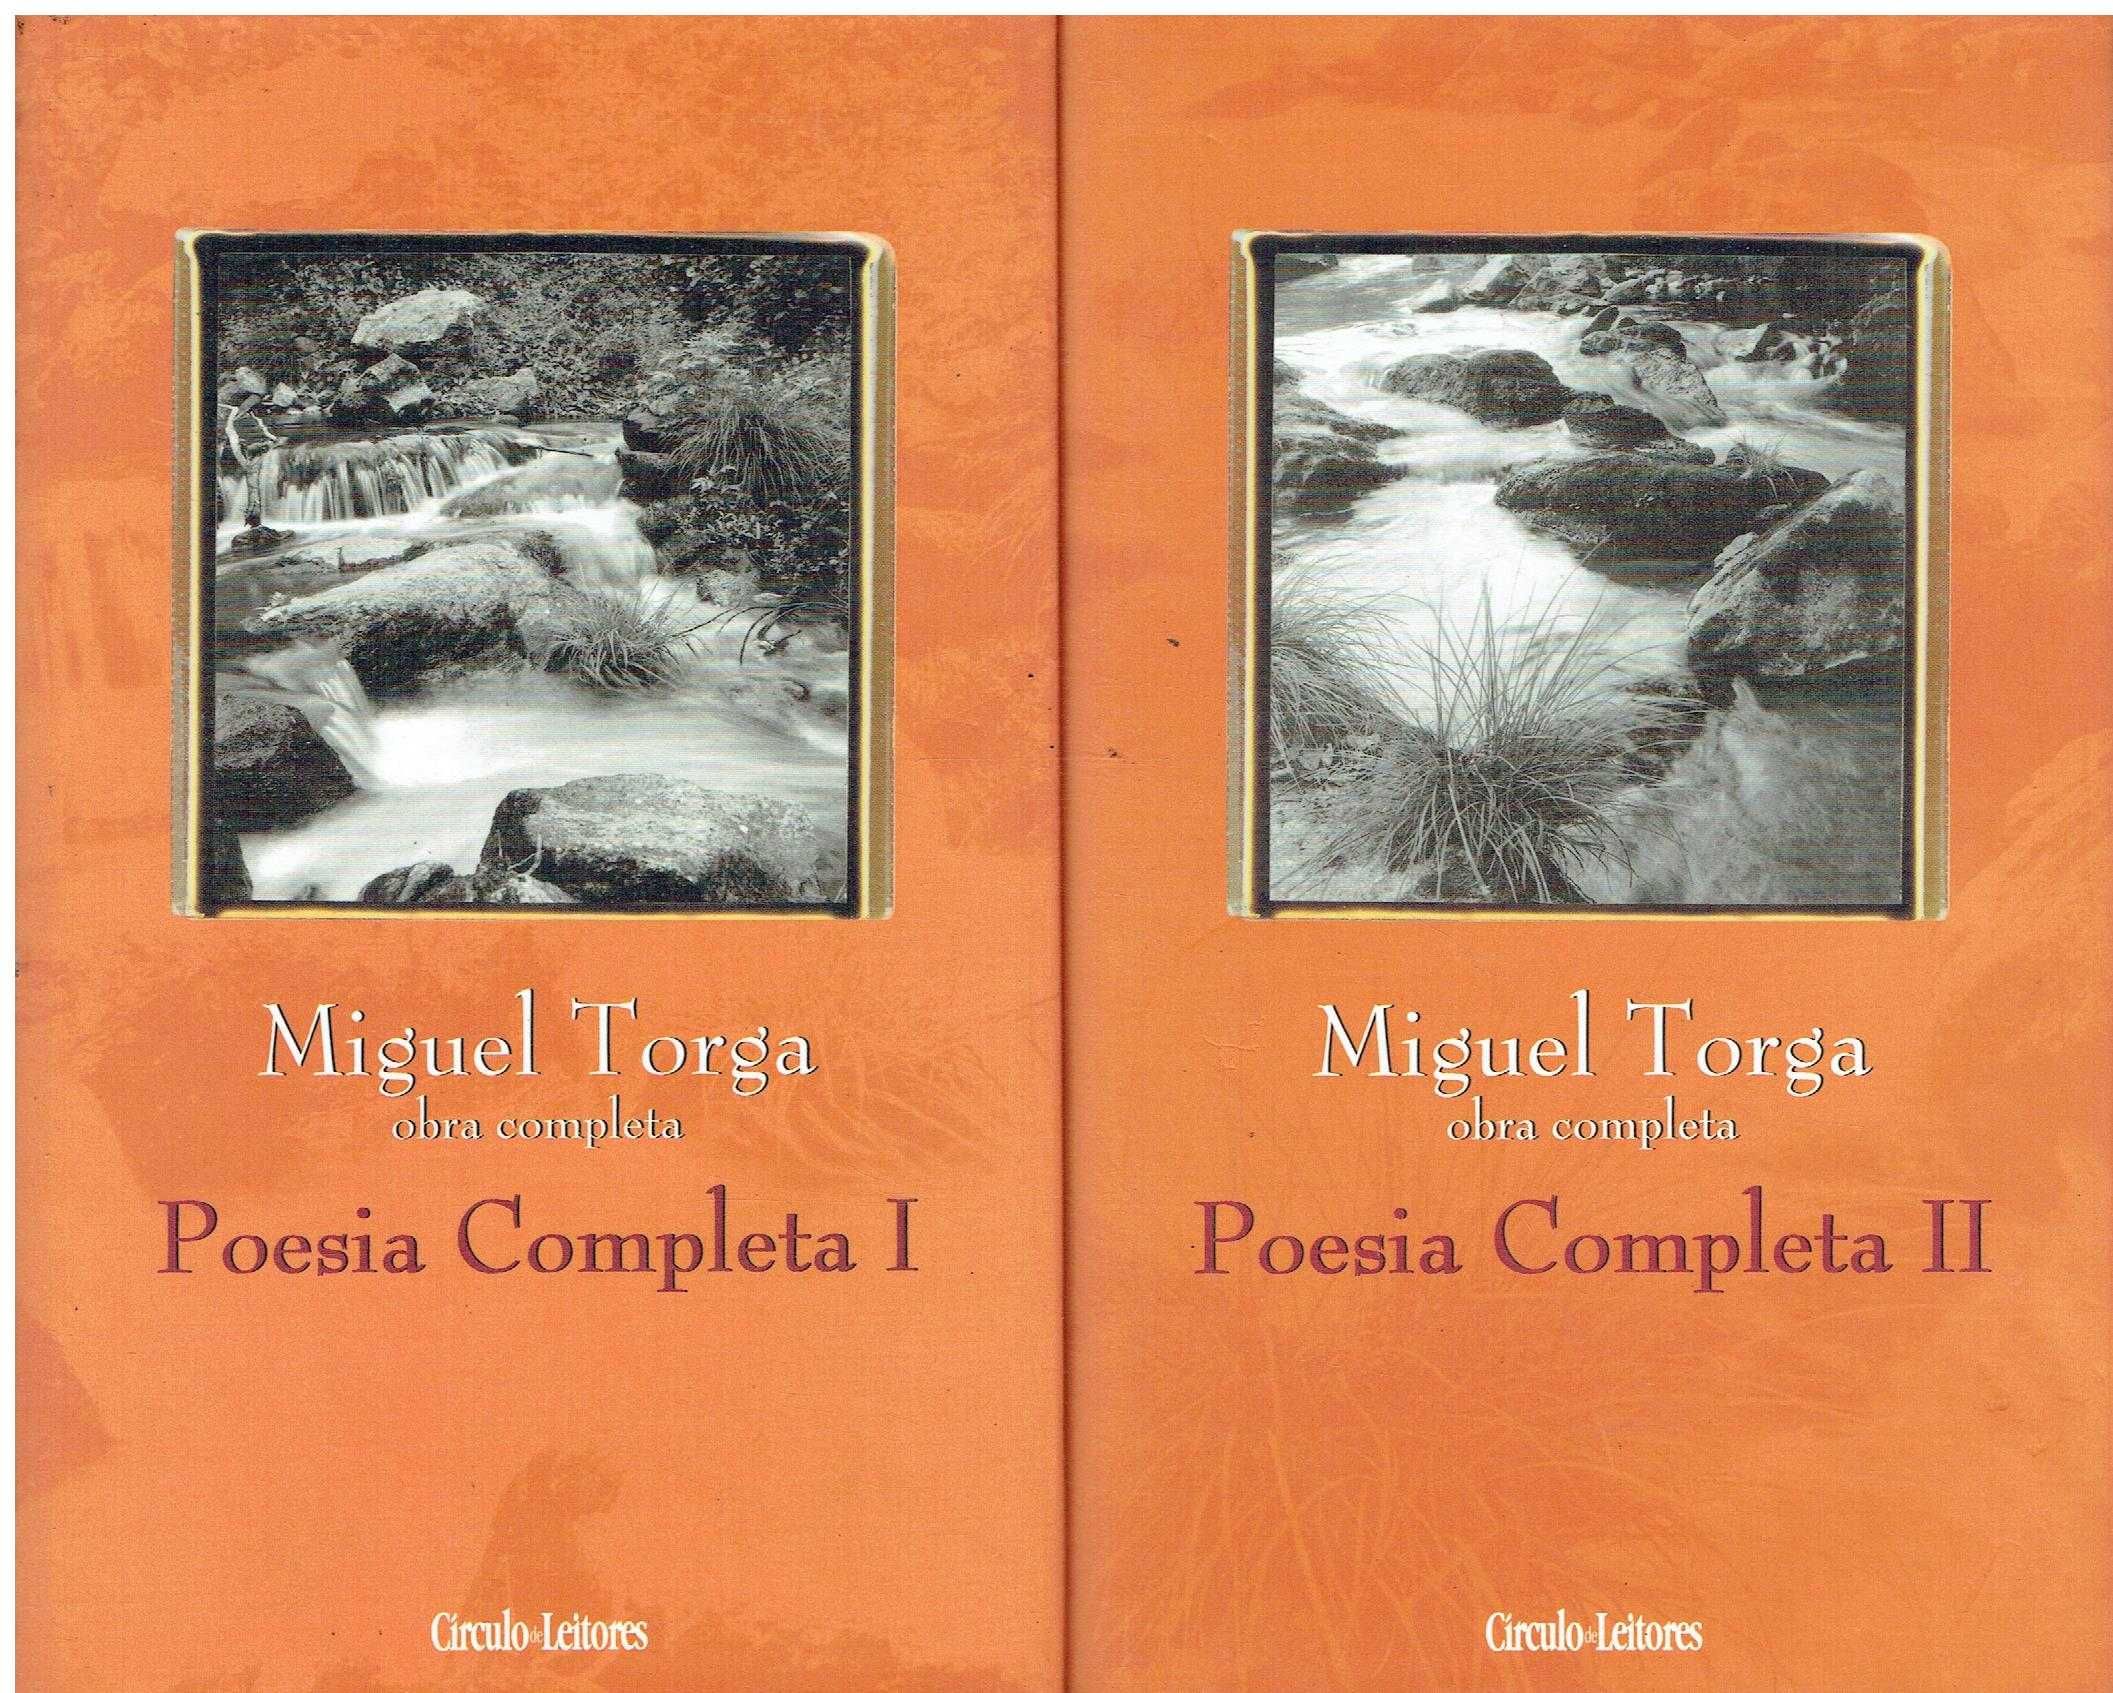 4906

Coleção Miguel Torga -Obra Completa

Circulo de Leitores